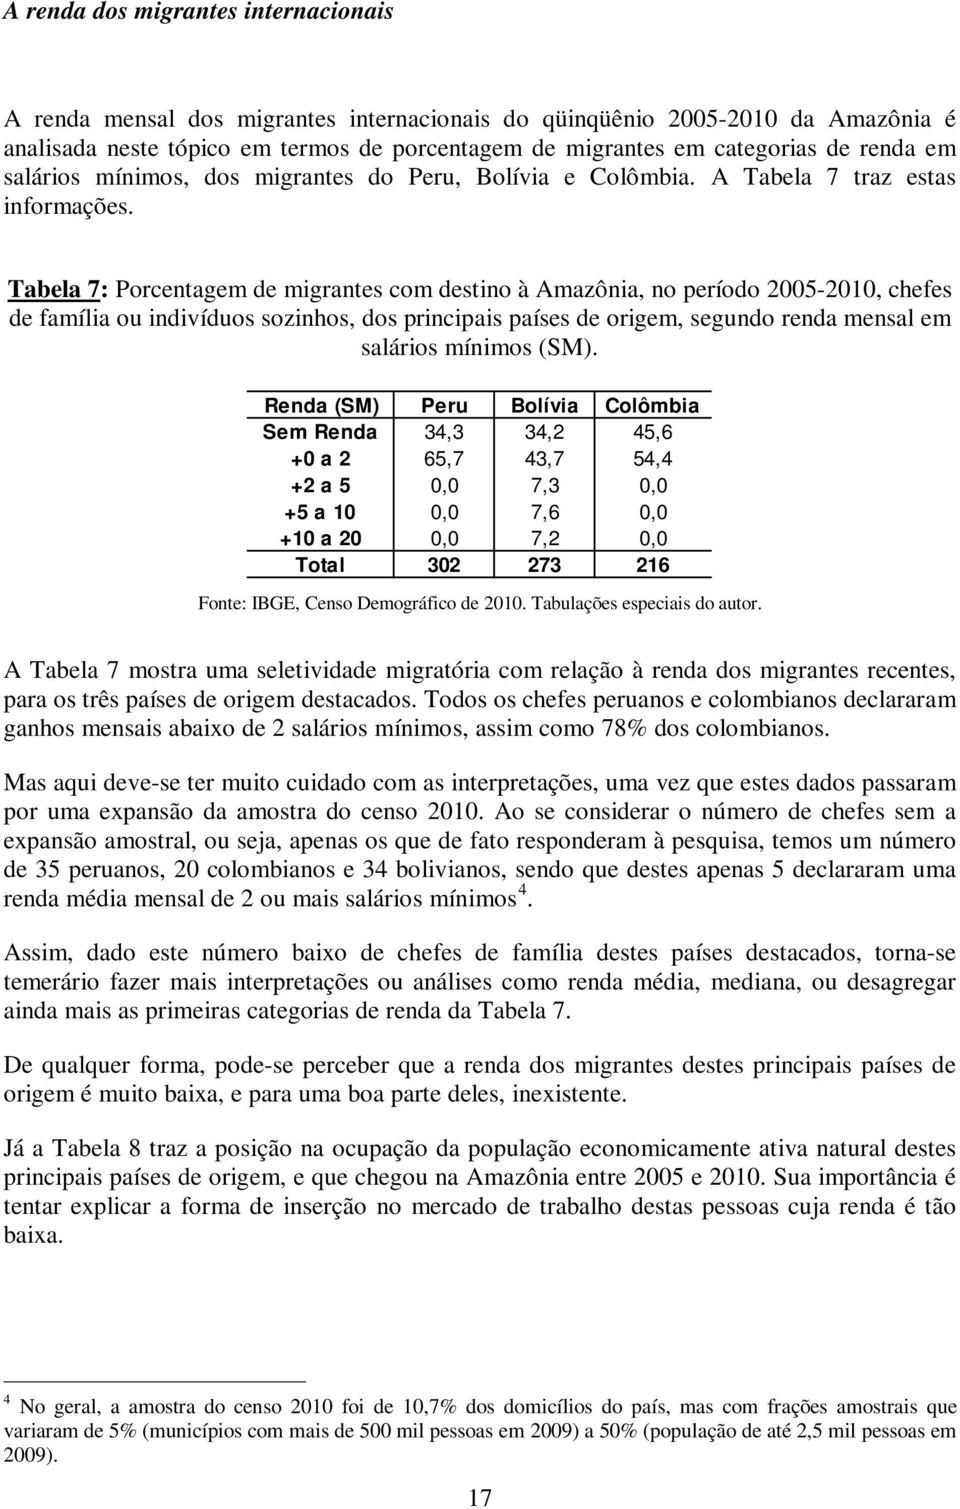 Tabela 7: Porcentagem de migrantes com destino à Amazônia, no período 2005-2010, chefes de família ou indivíduos sozinhos, dos principais países de origem, segundo renda mensal em salários mínimos